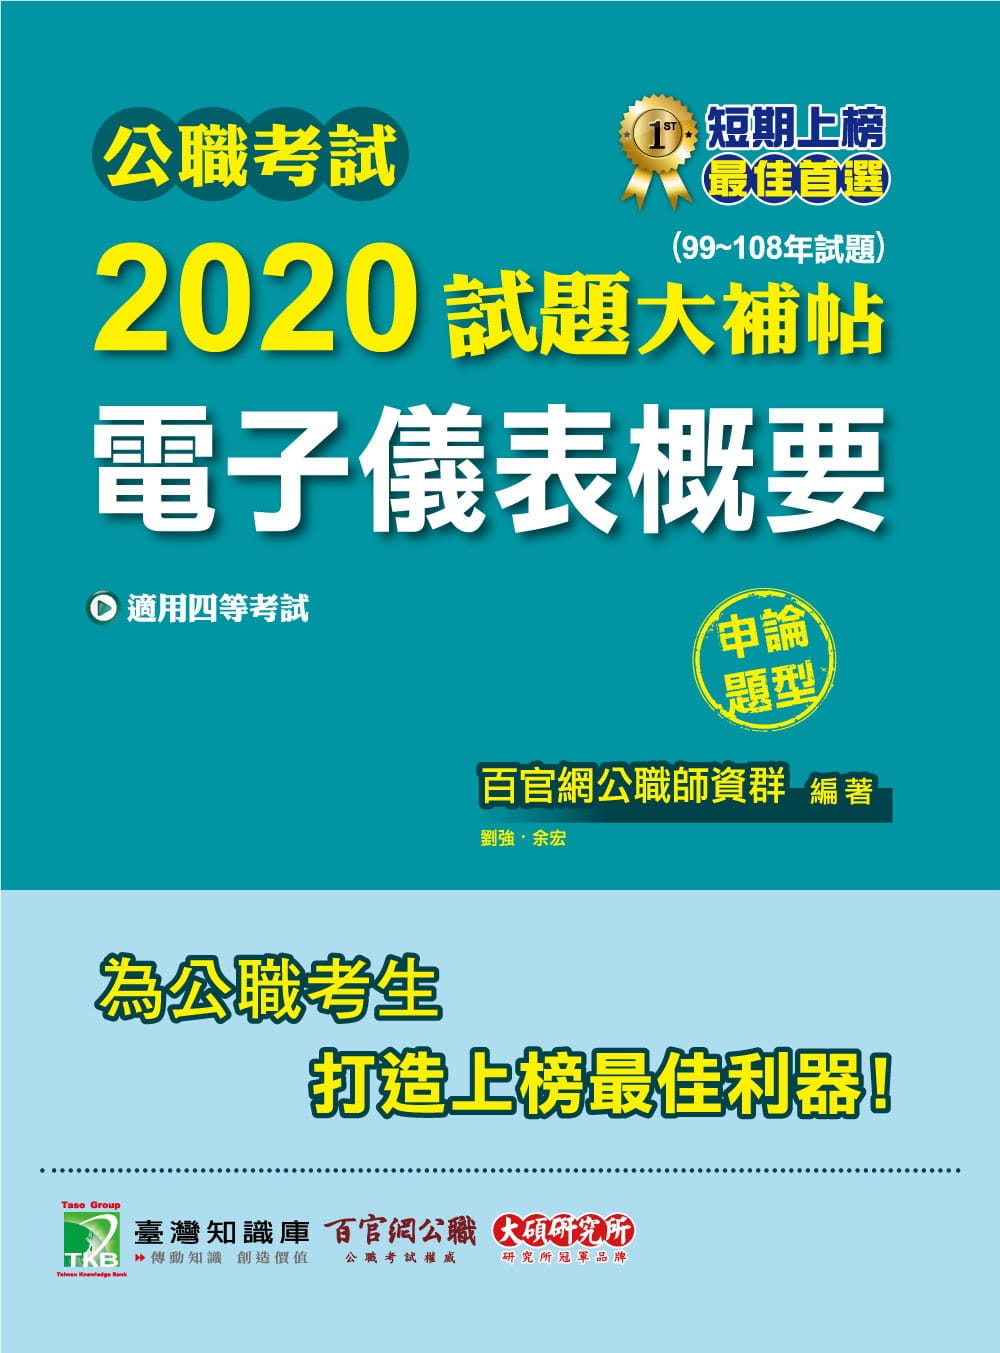 公職考試2020試題大補帖【電子儀表概要】(99∼108年試題)(申論題型)